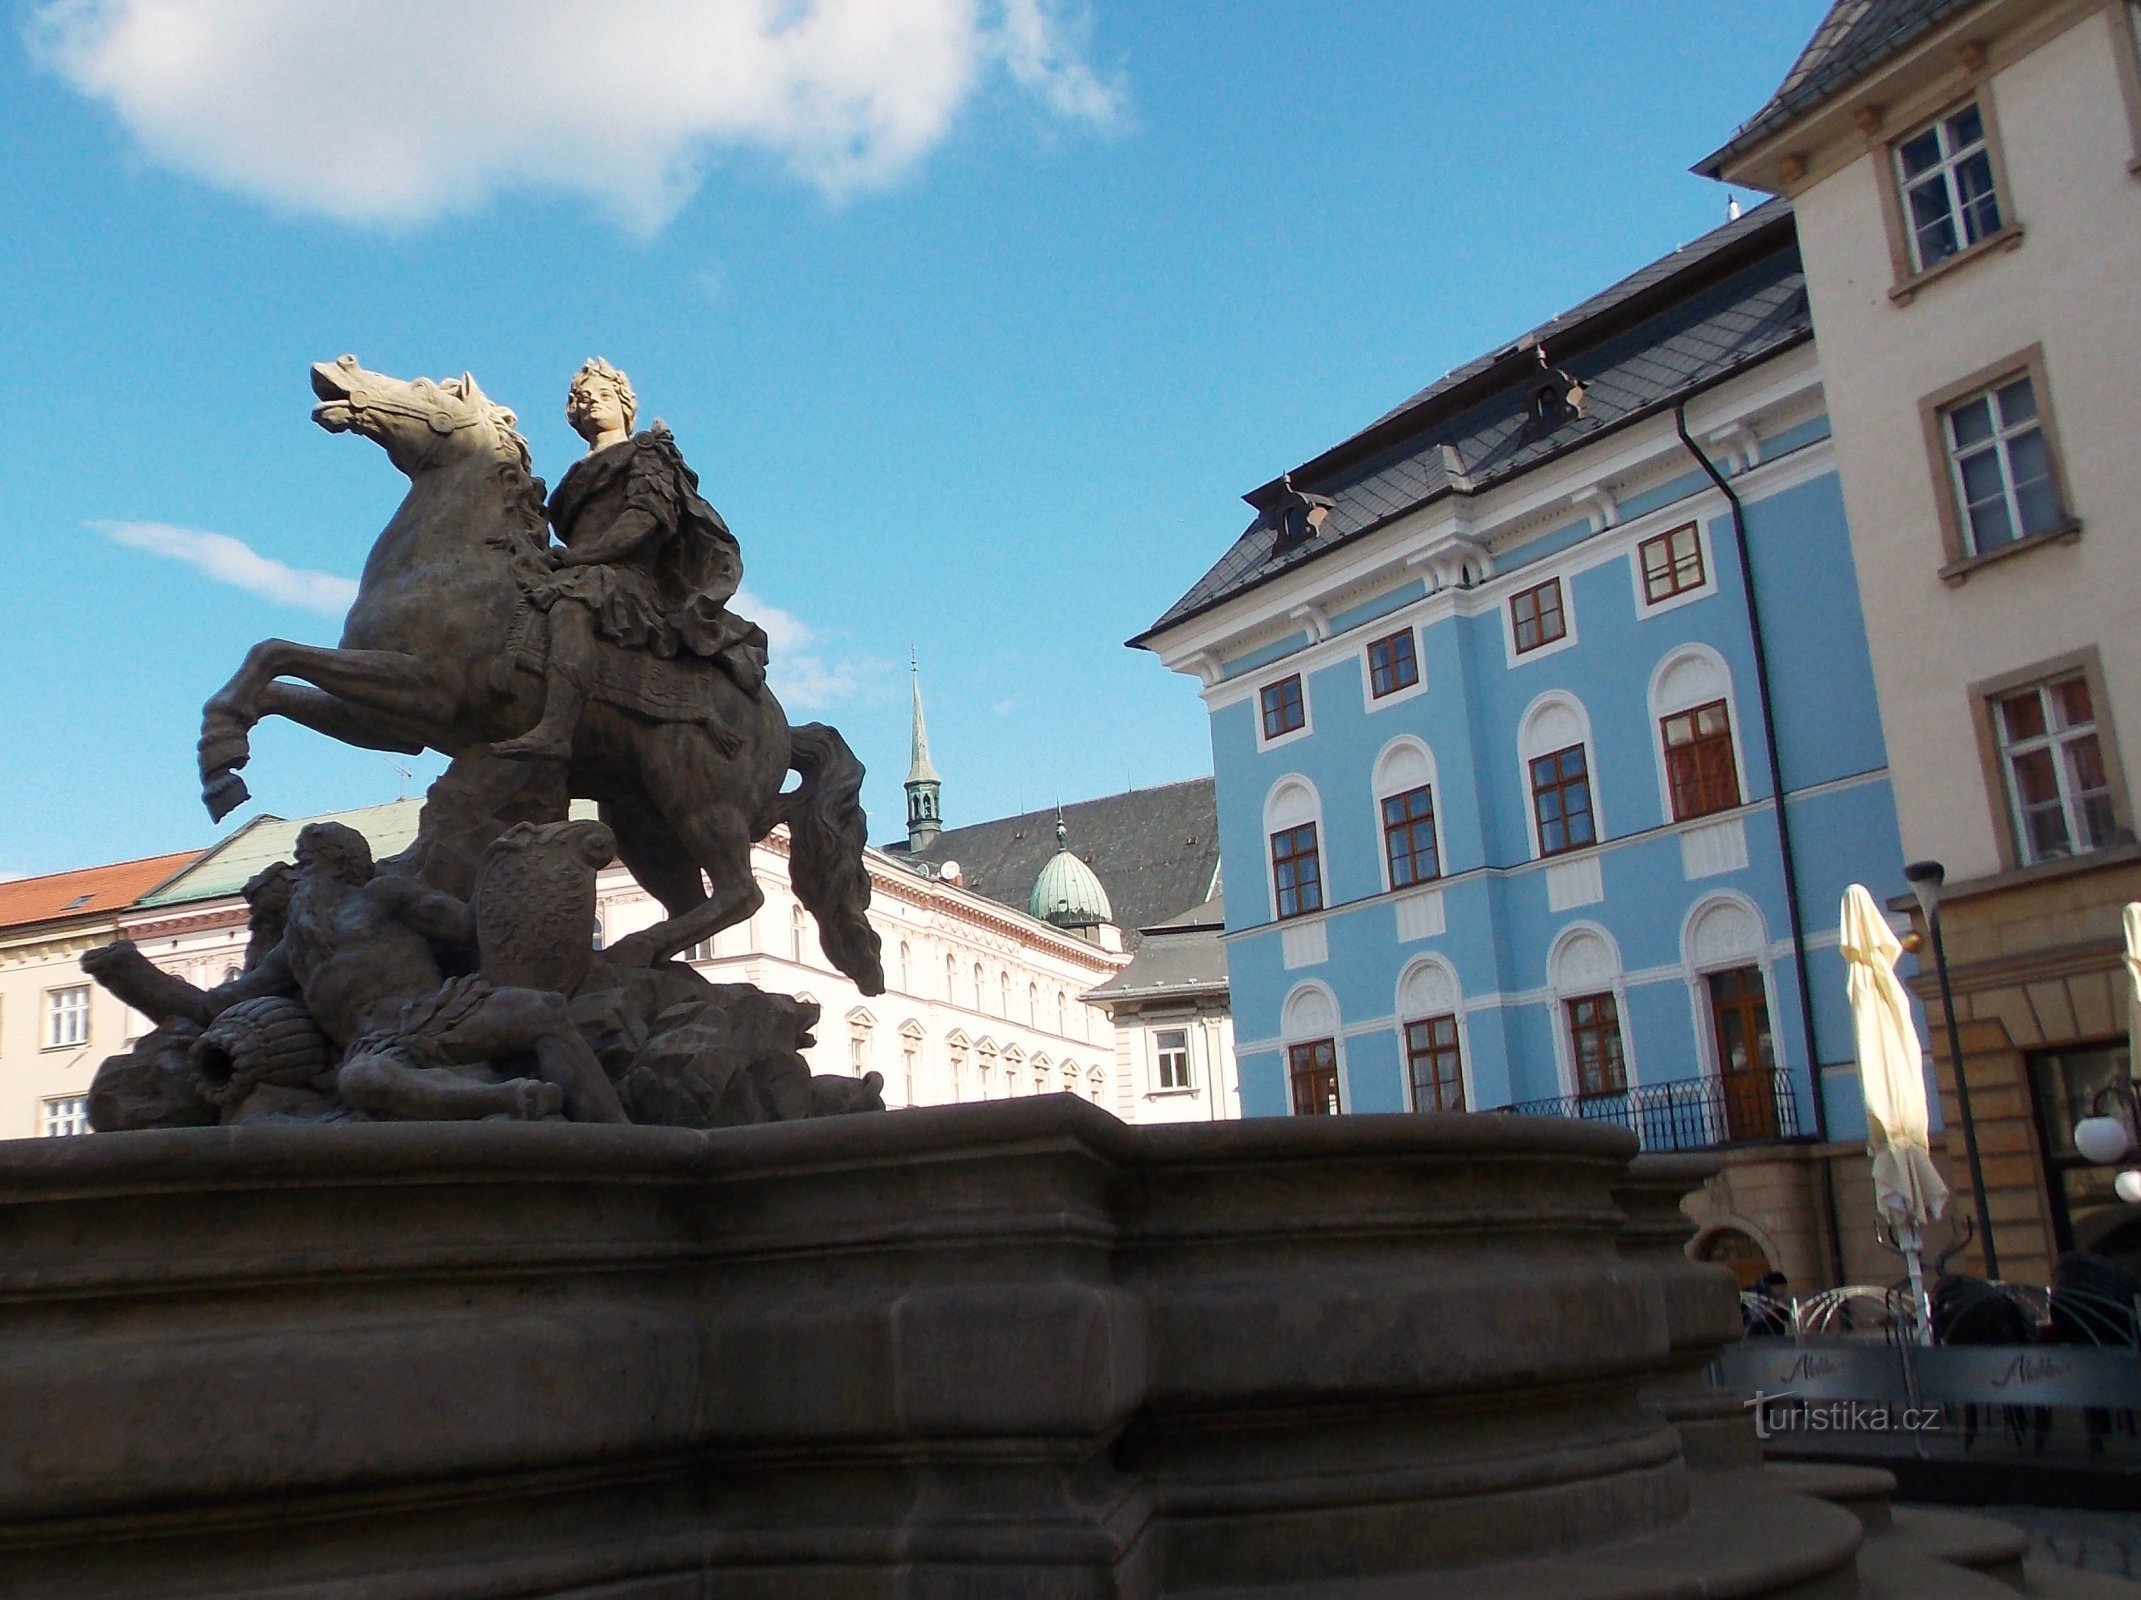 Ενδιαφέρον μέρος στο Horní náměstí στο Olomouc